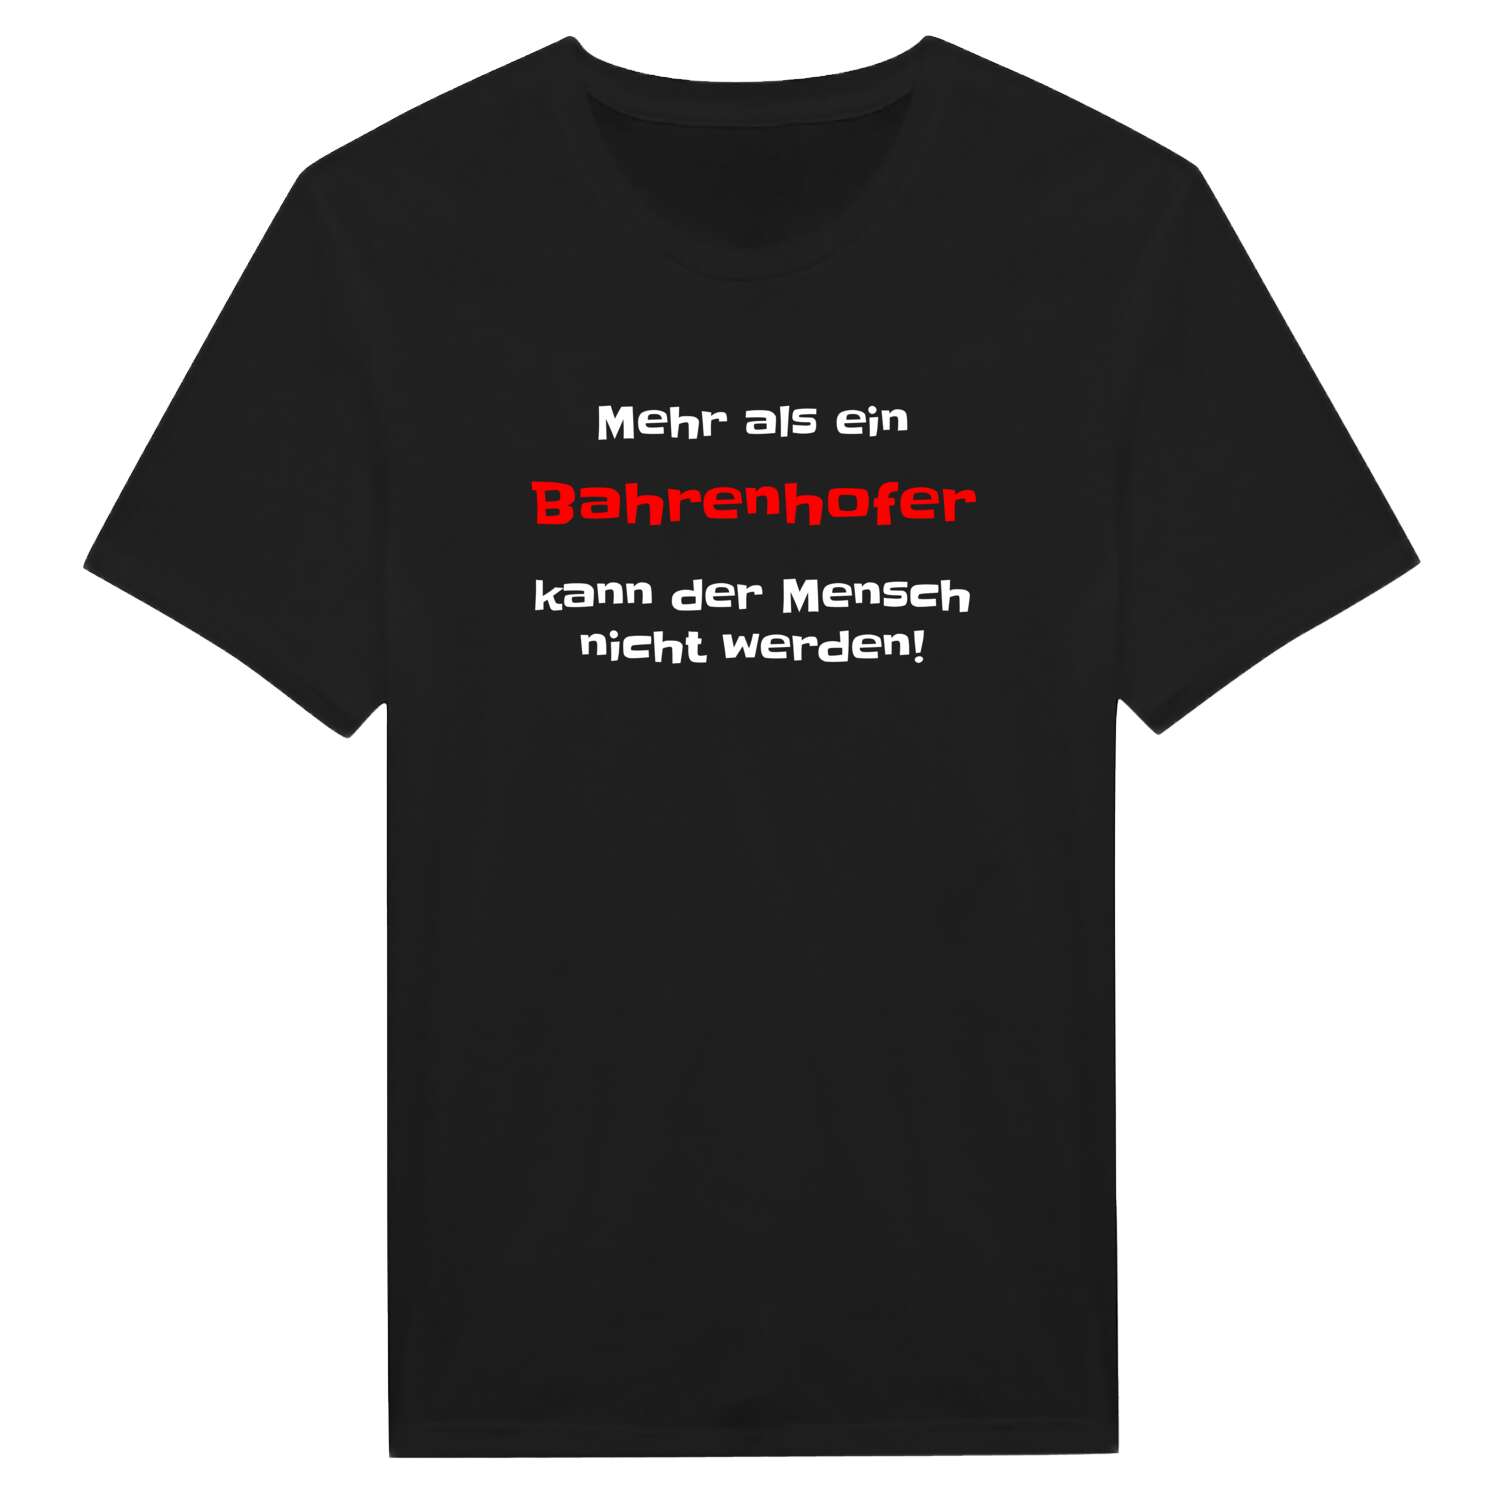 Bahrenhof T-Shirt »Mehr als ein«